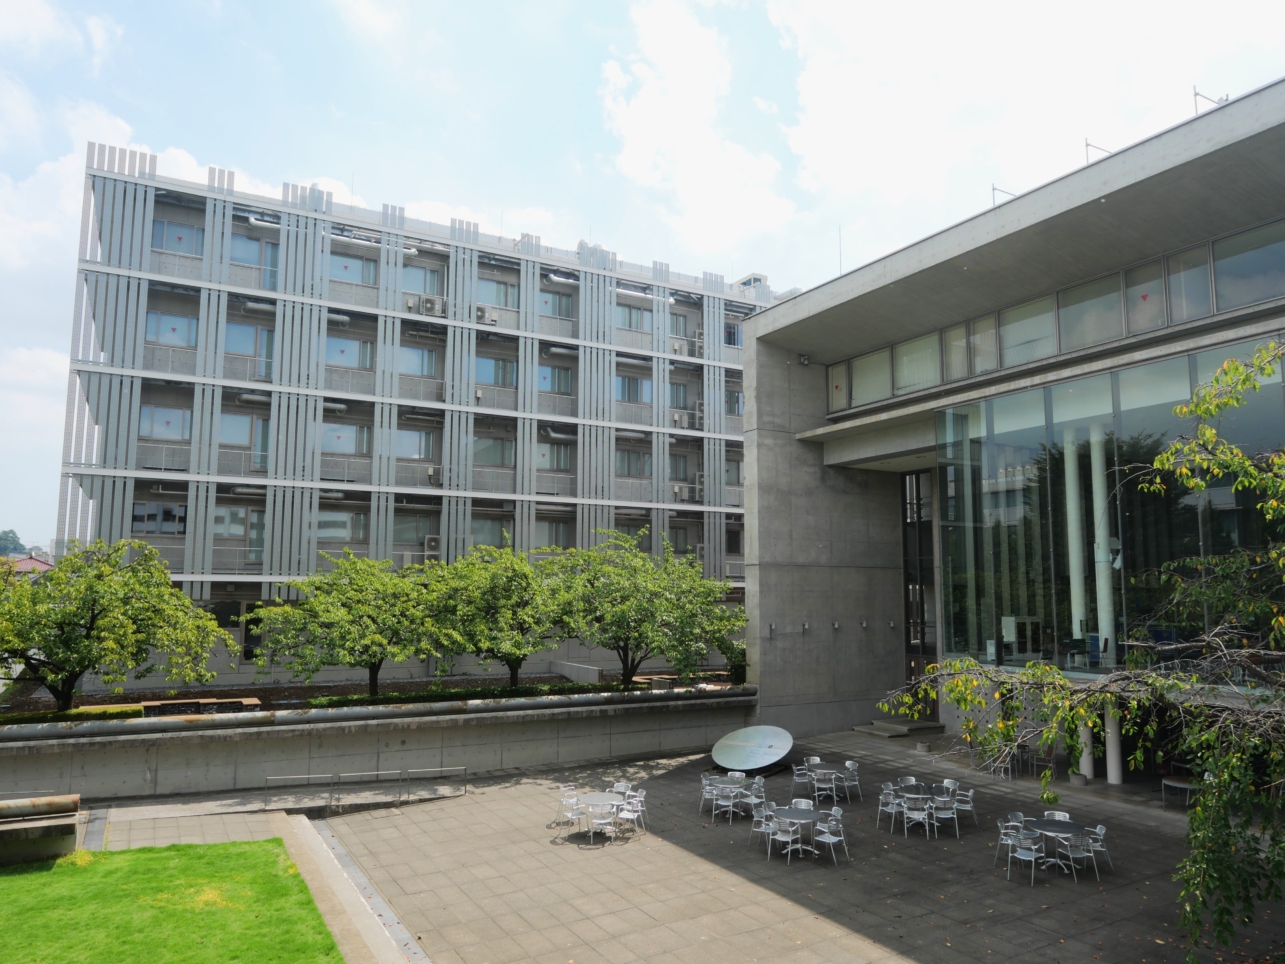 洗練されたキャンパスの東京都市大学。